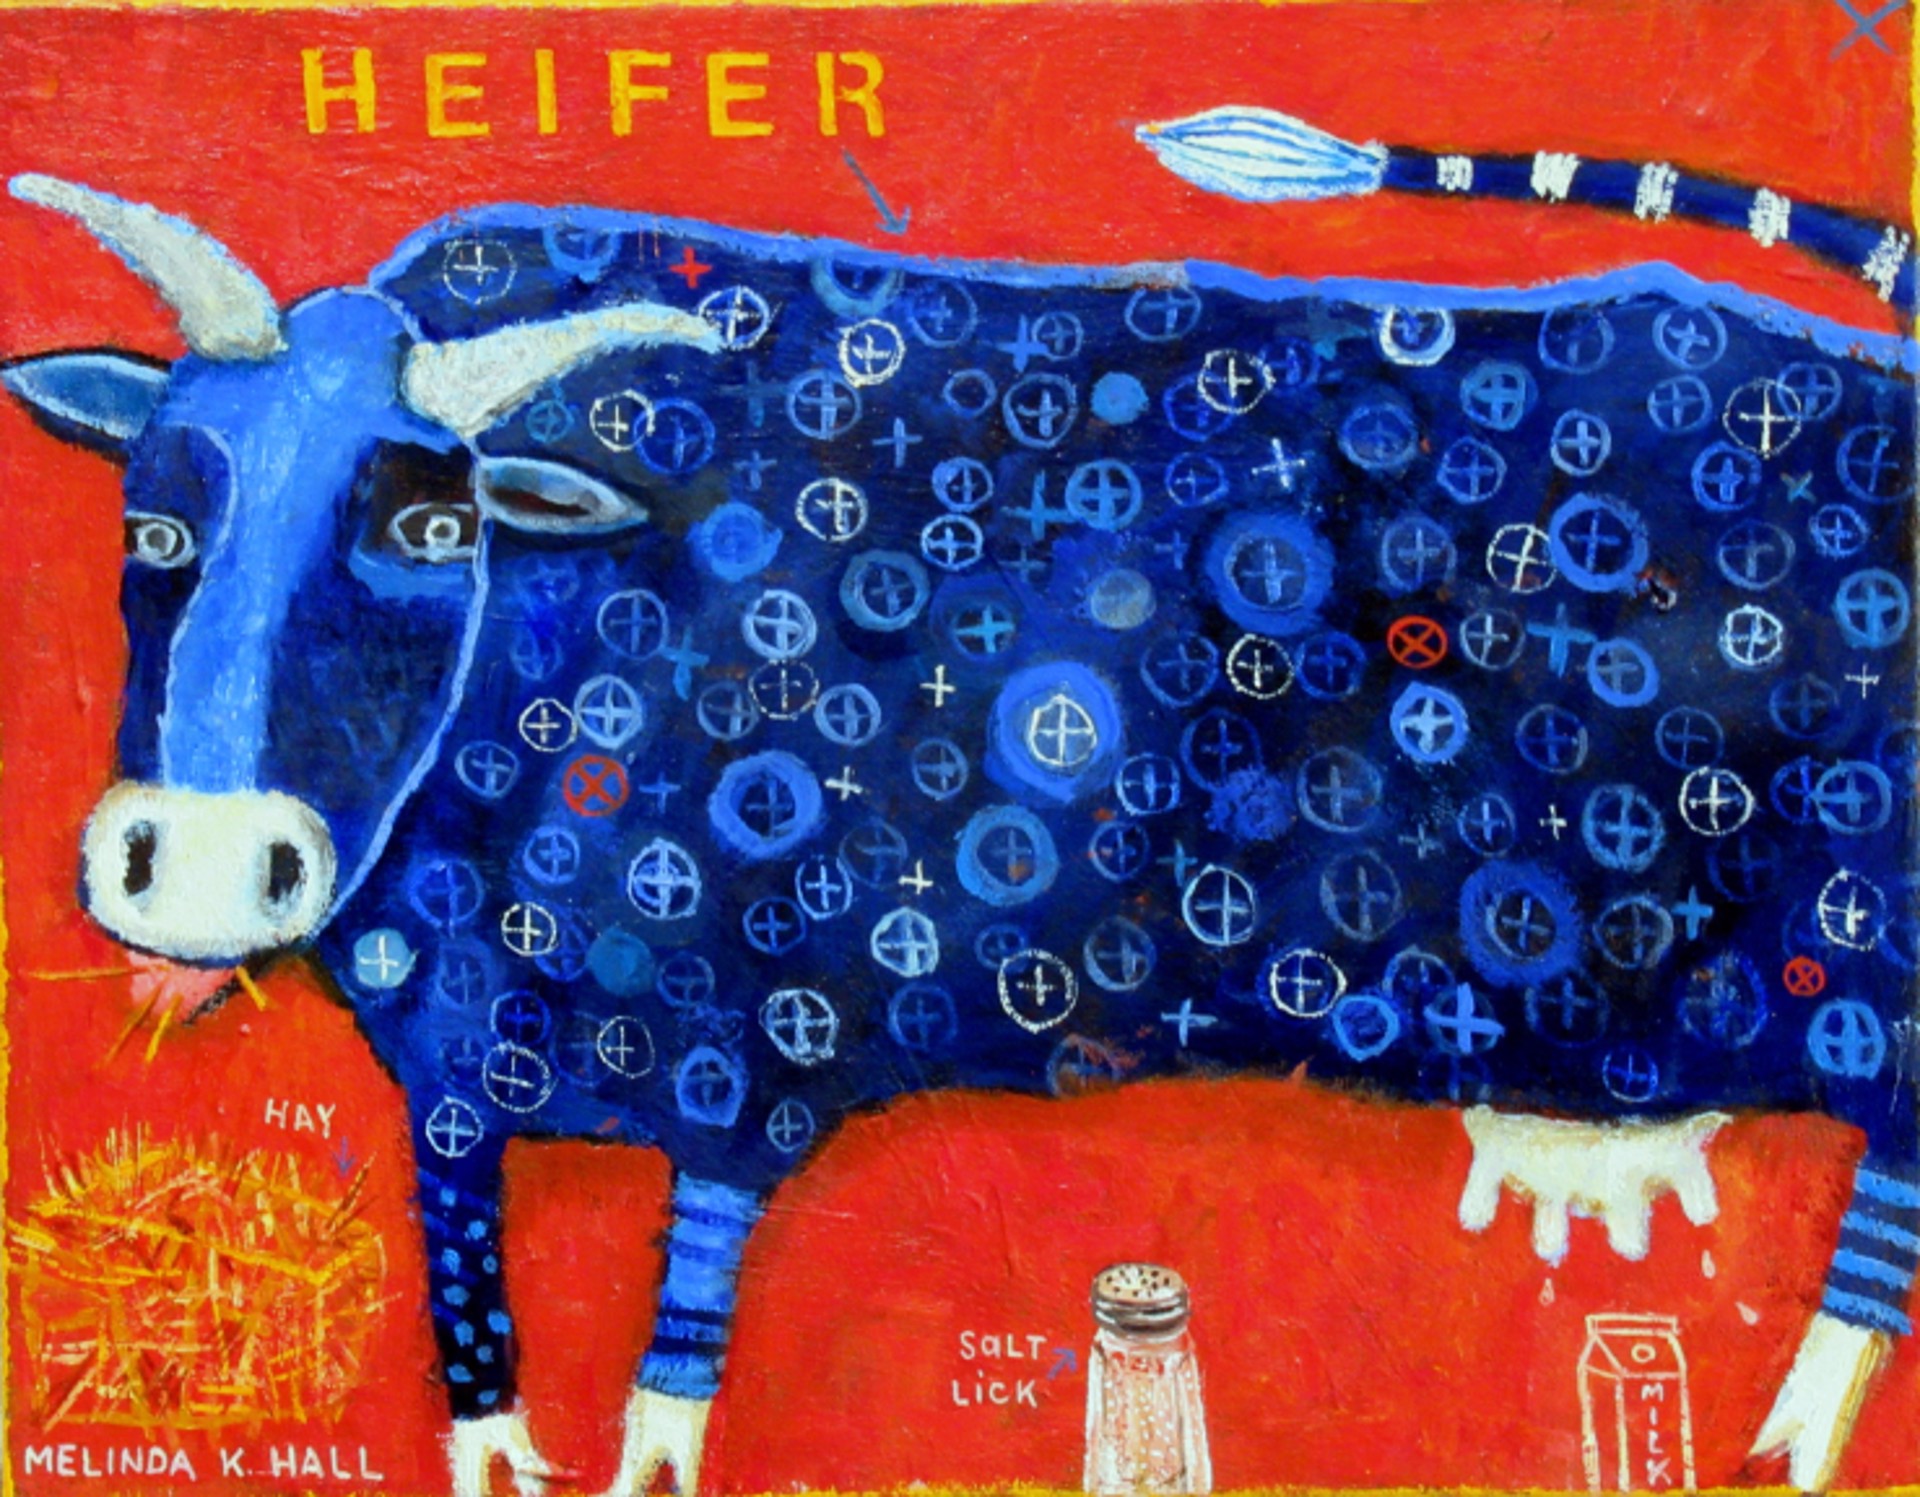 Heifer by Melinda K. Hall